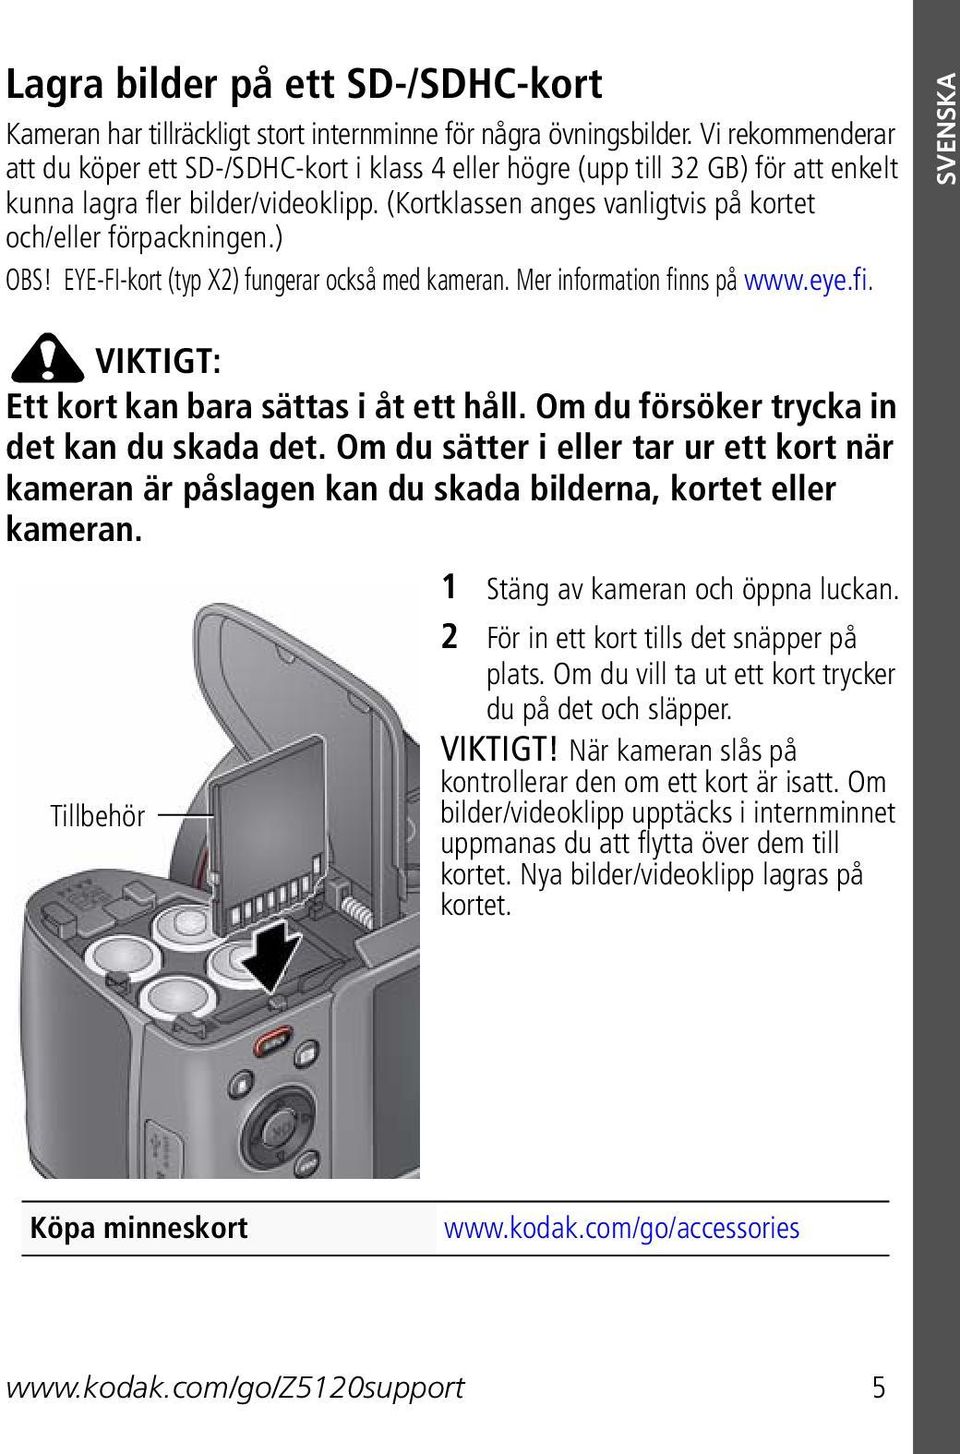 (Kortklassen anges vanligtvis på kortet och/eller förpackningen.) OBS! EYE-FI-kort (typ X2) fungerar också med kameran. Mer information finns på www.eye.fi. SVENSKA VIKTIGT: Ett kort kan bara sättas i åt ett håll.